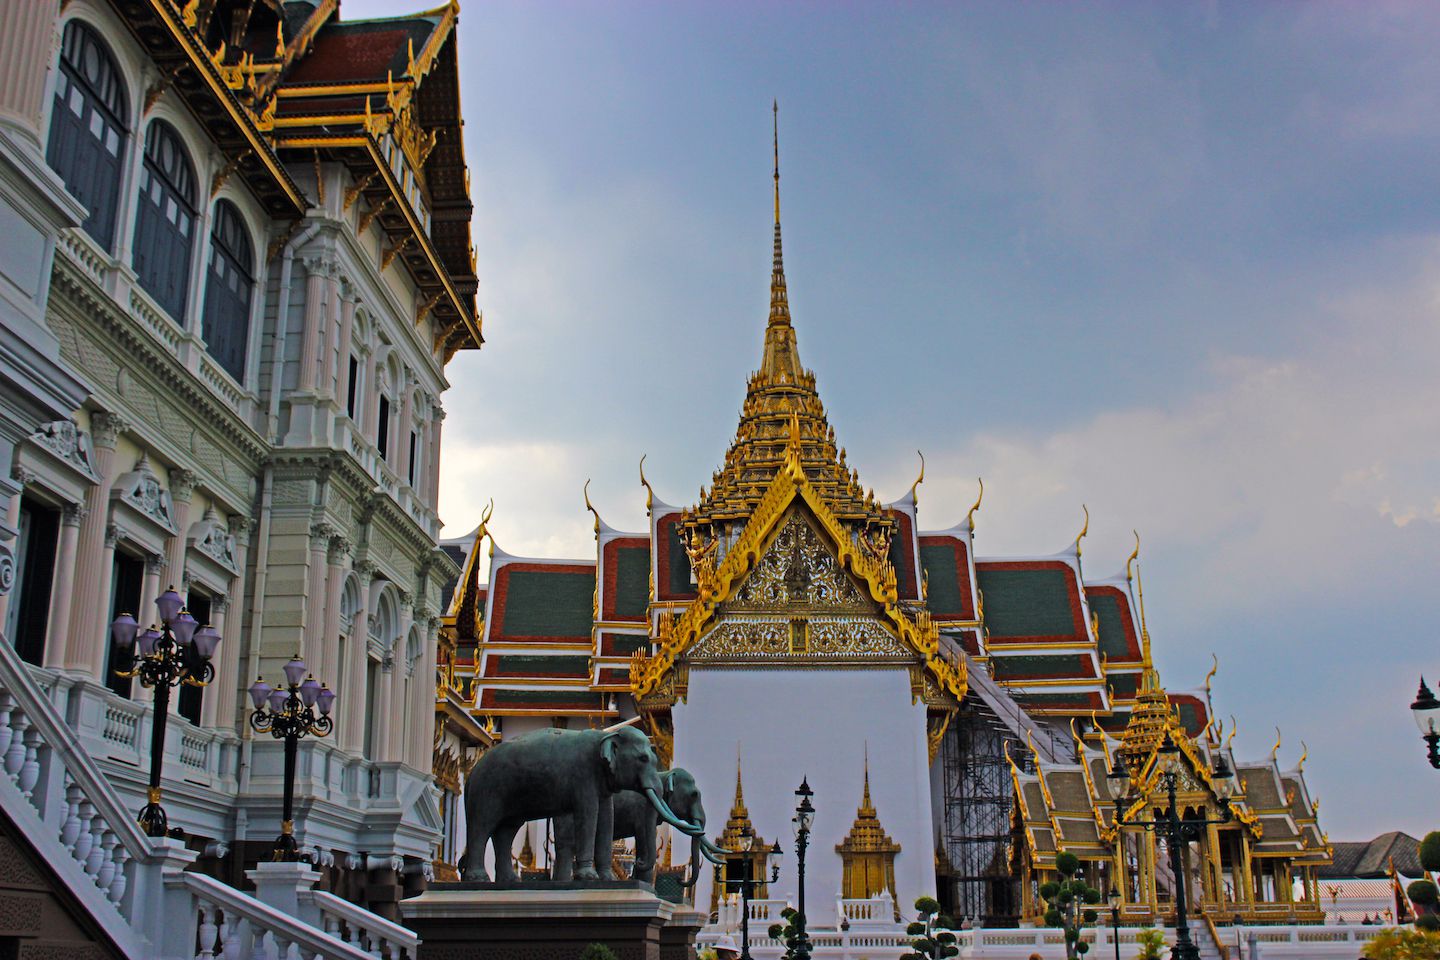 Buildings at the Grand Palace in Bangkok